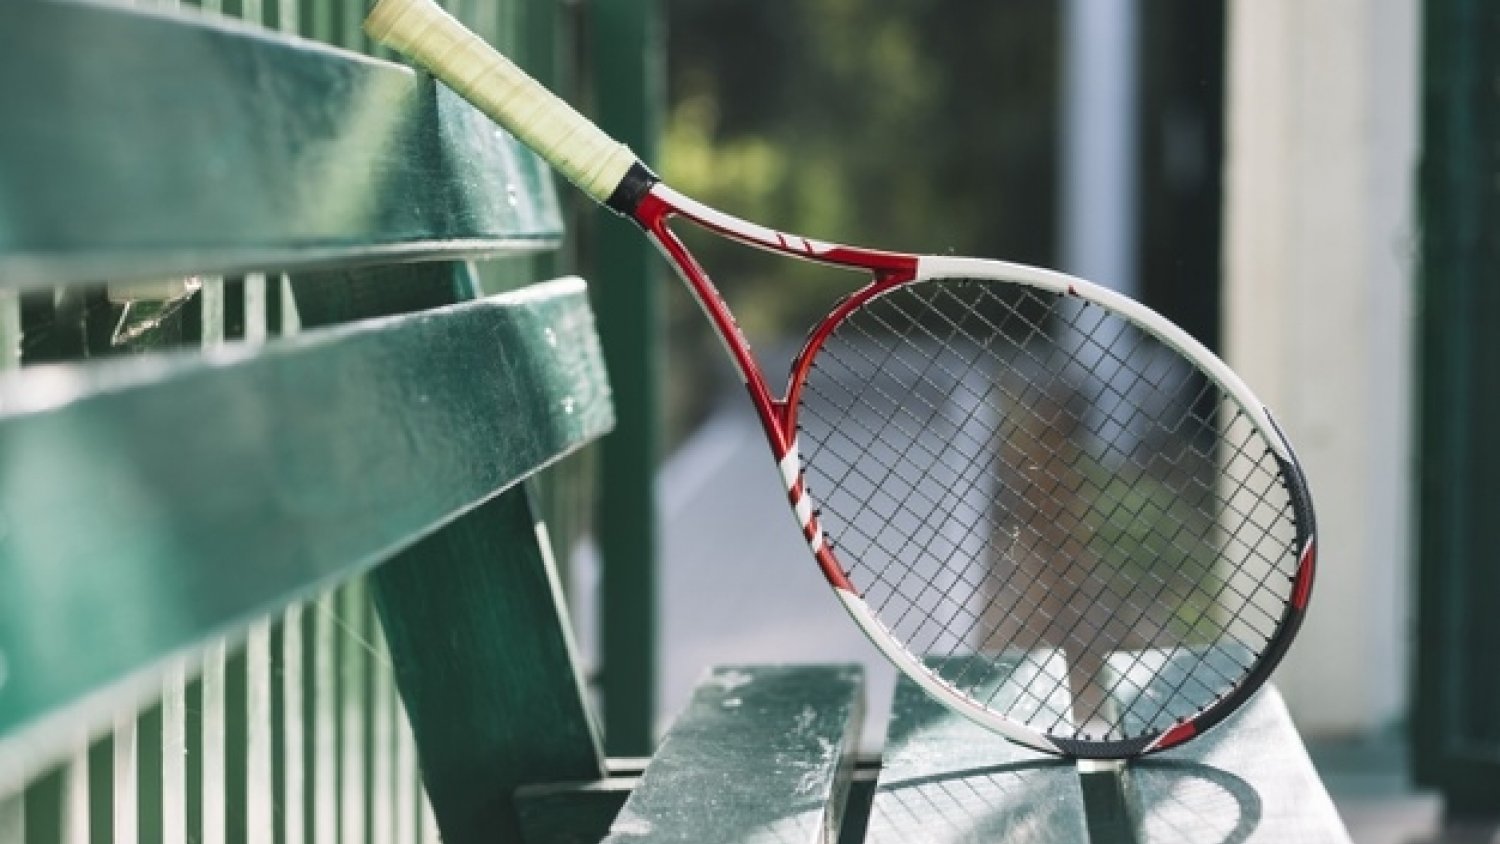 Estepona será una de las sedes del 25º Circuito de Tenis RPT-Marca Jóvenes Promesas 2020